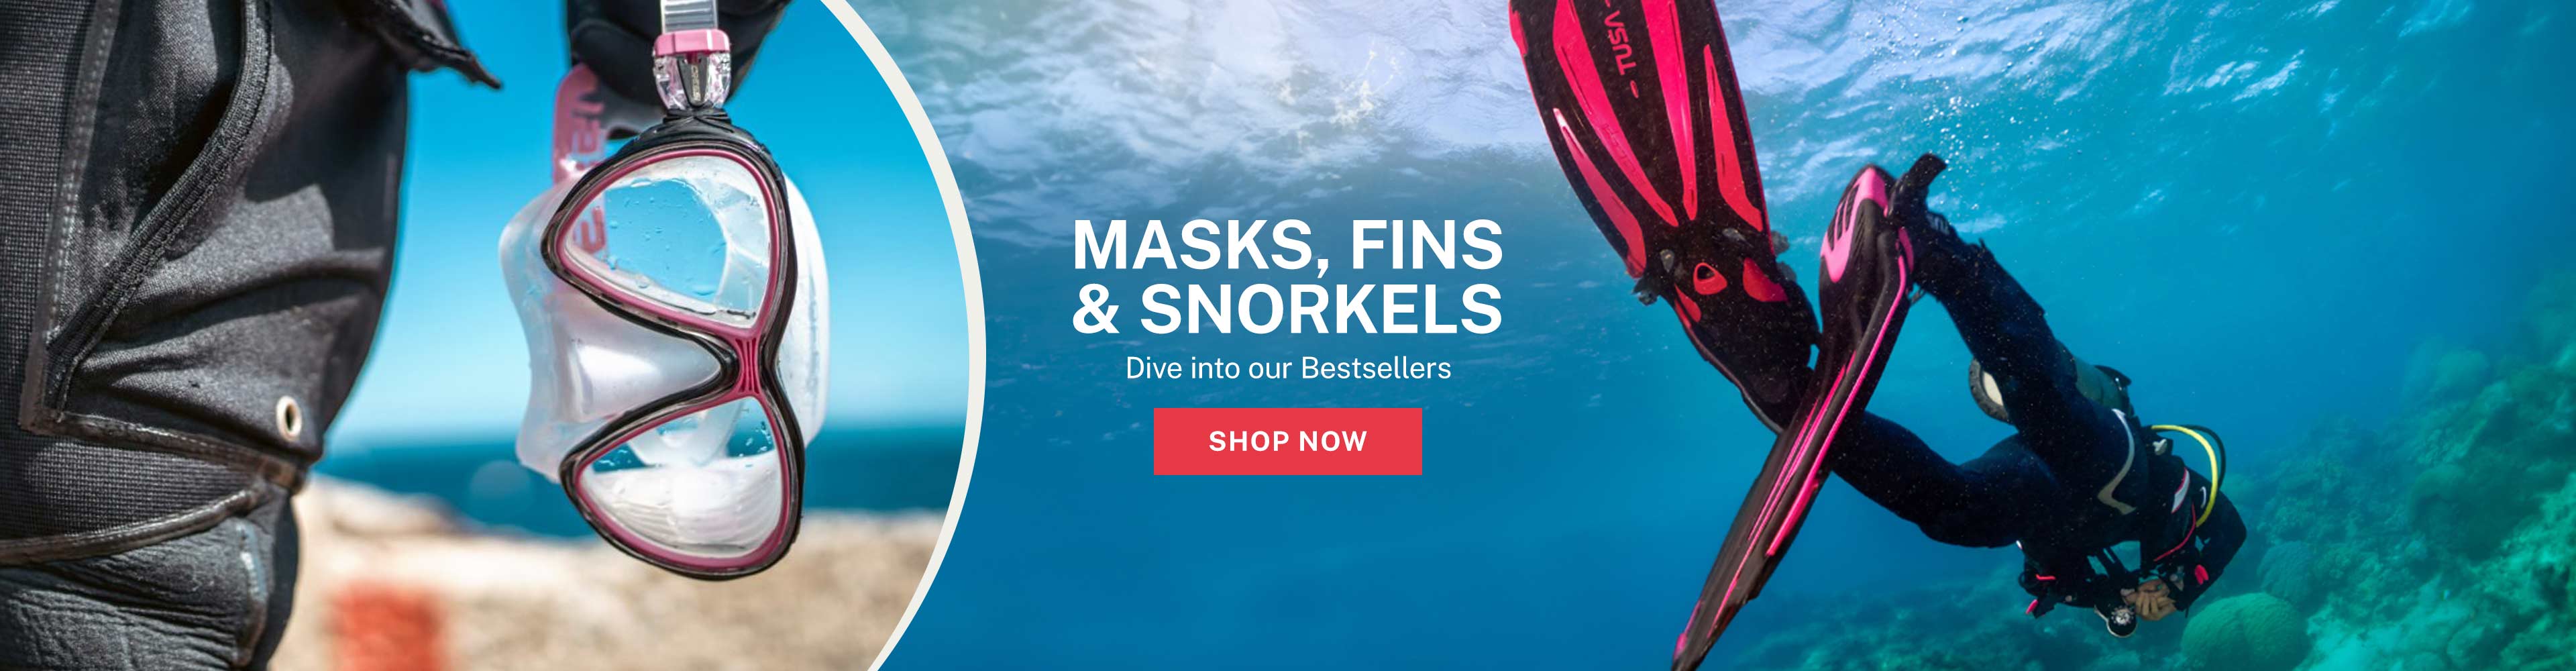 Top Masks Fins & Snorkels